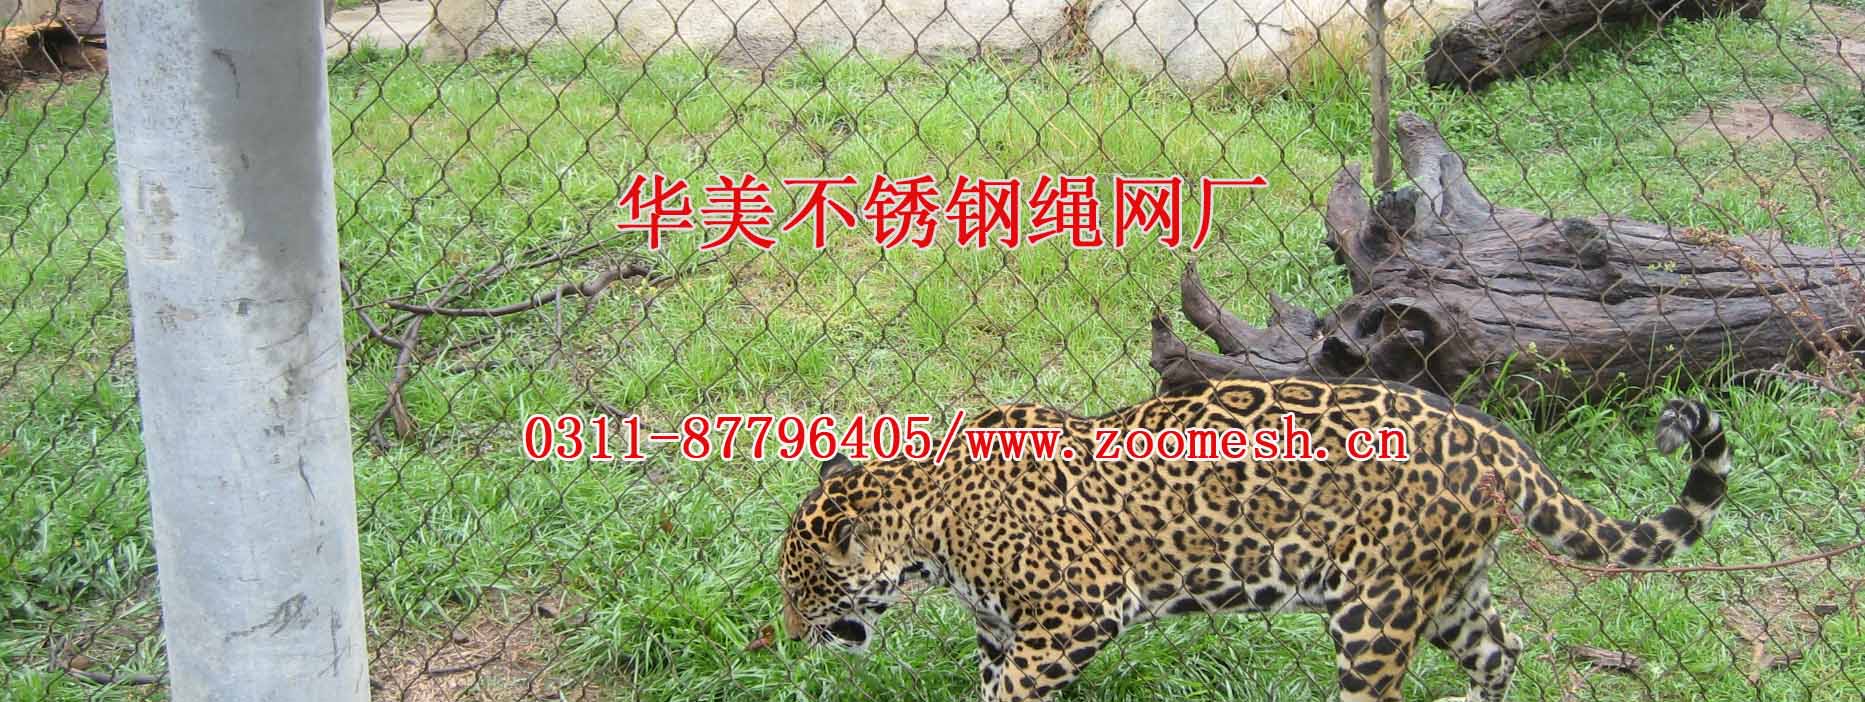 不锈钢动物园电缆网用于建造豹子笼舍.jpg